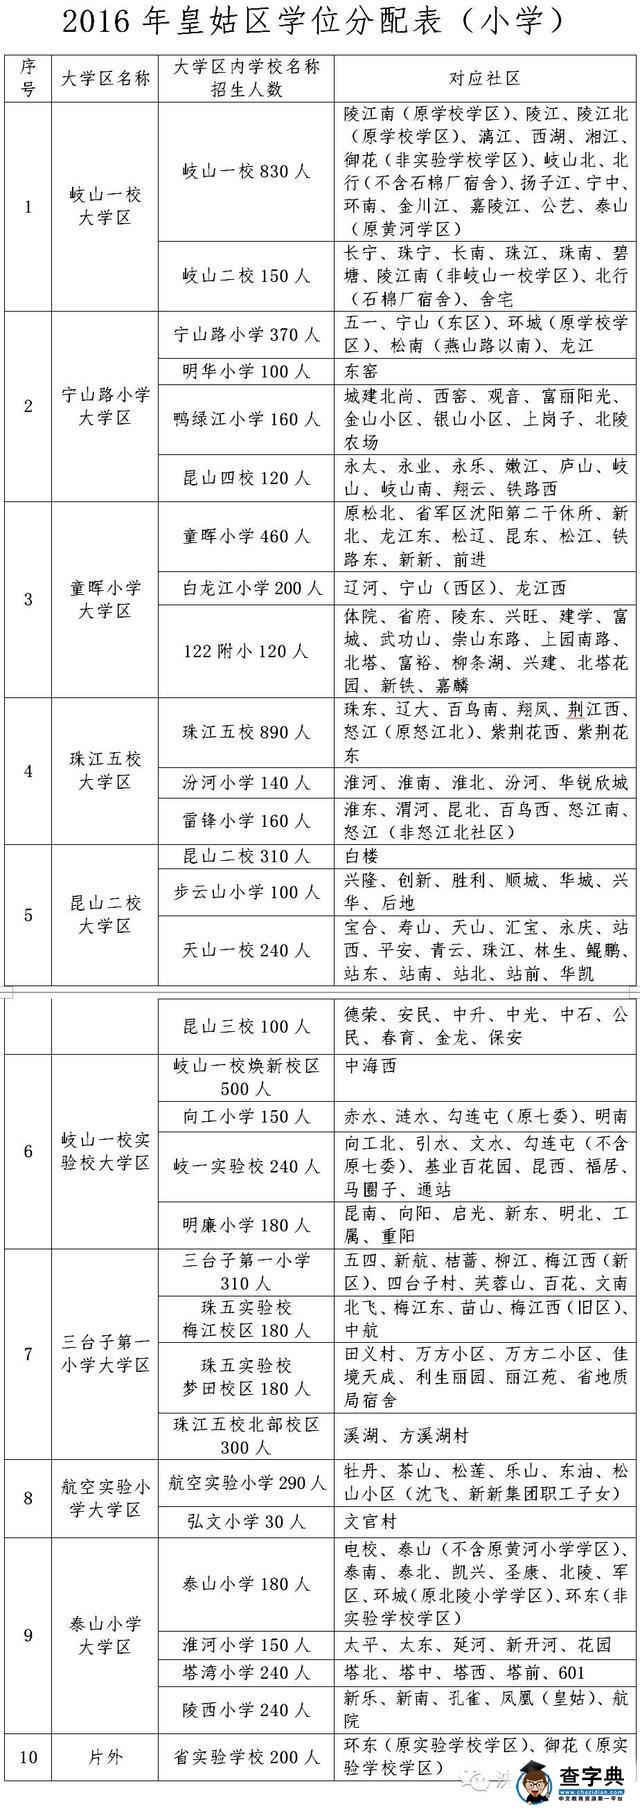 2016年沈阳皇姑区学位分配表招生划片范围1